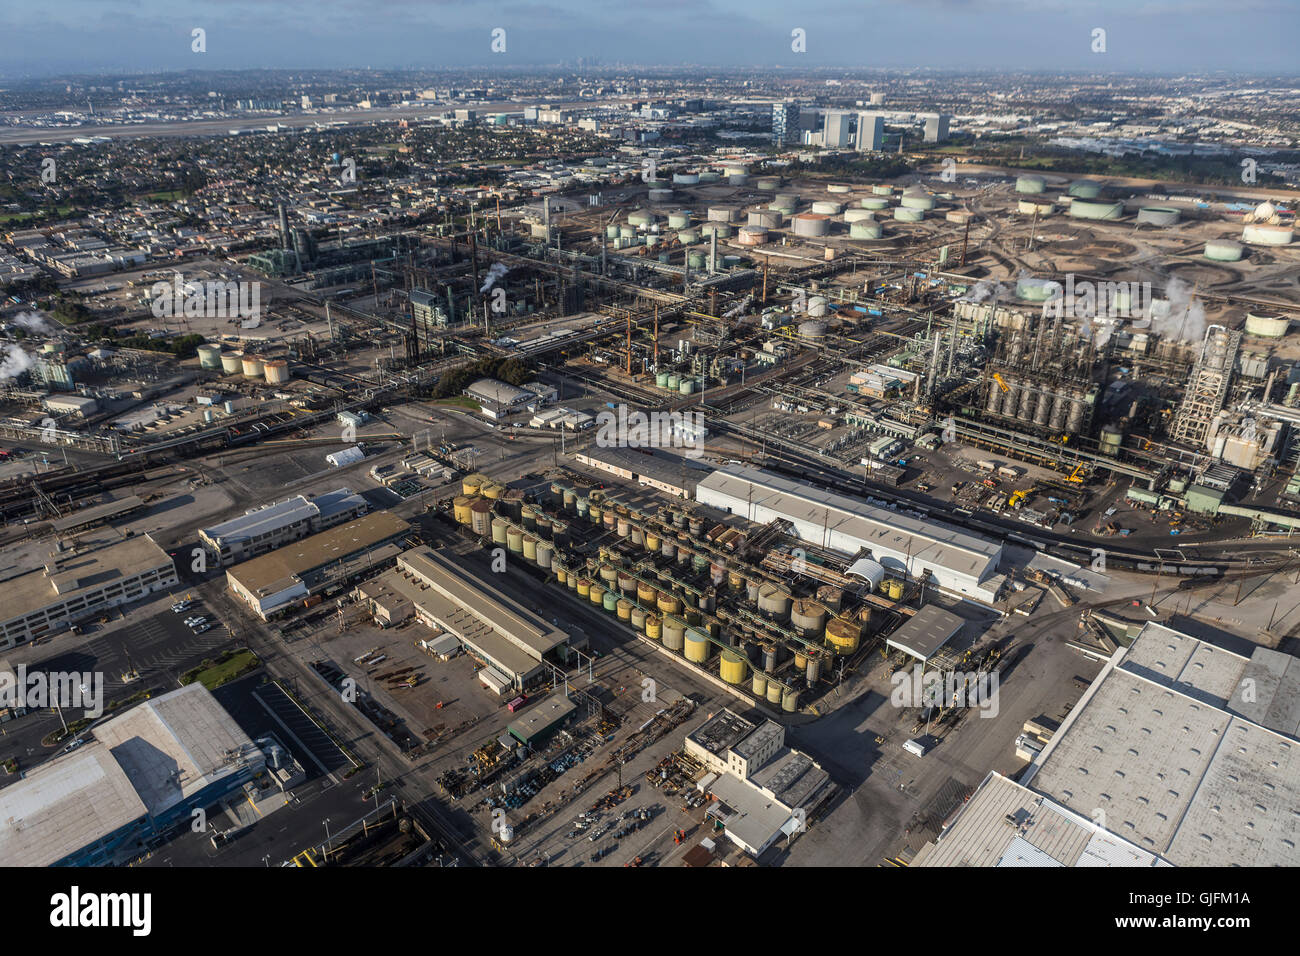 El Segundo, California, Stati Uniti d'America - 6 Agosto 2016: Veduta aerea della grande raffineria di petrolio nei pressi di Los Angeles in California del Sud. Foto Stock